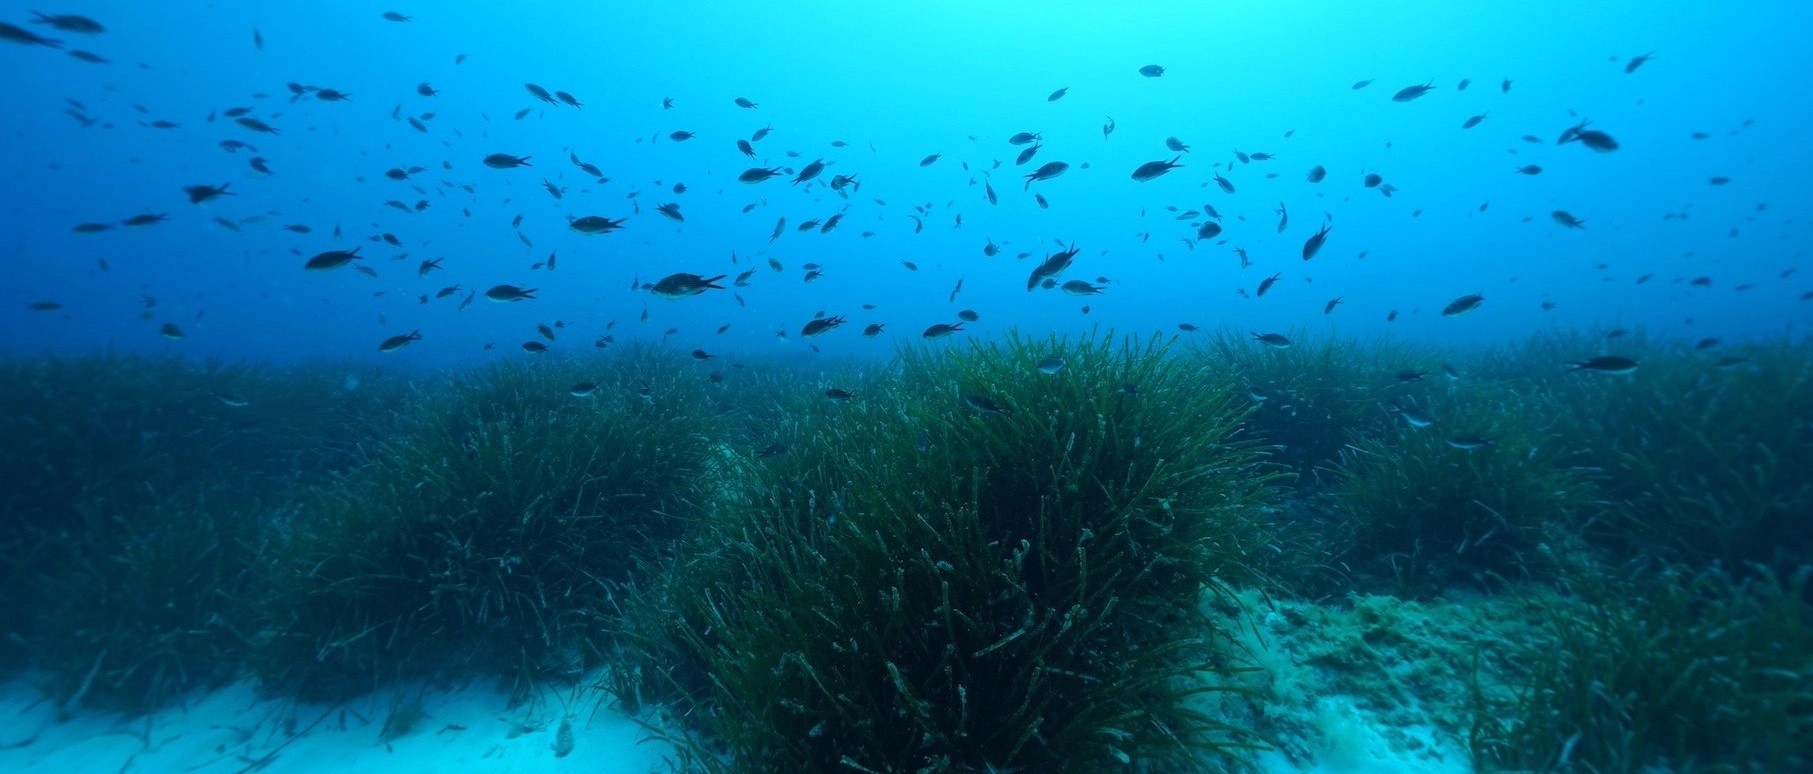 Pesquisadores do Instituto Max Planck de Microbiologia Marinha consideram suas descobertas relevantes para muitos habitats de plantas marinhas (Foto: HYDRA Marine Sciences GmbH)